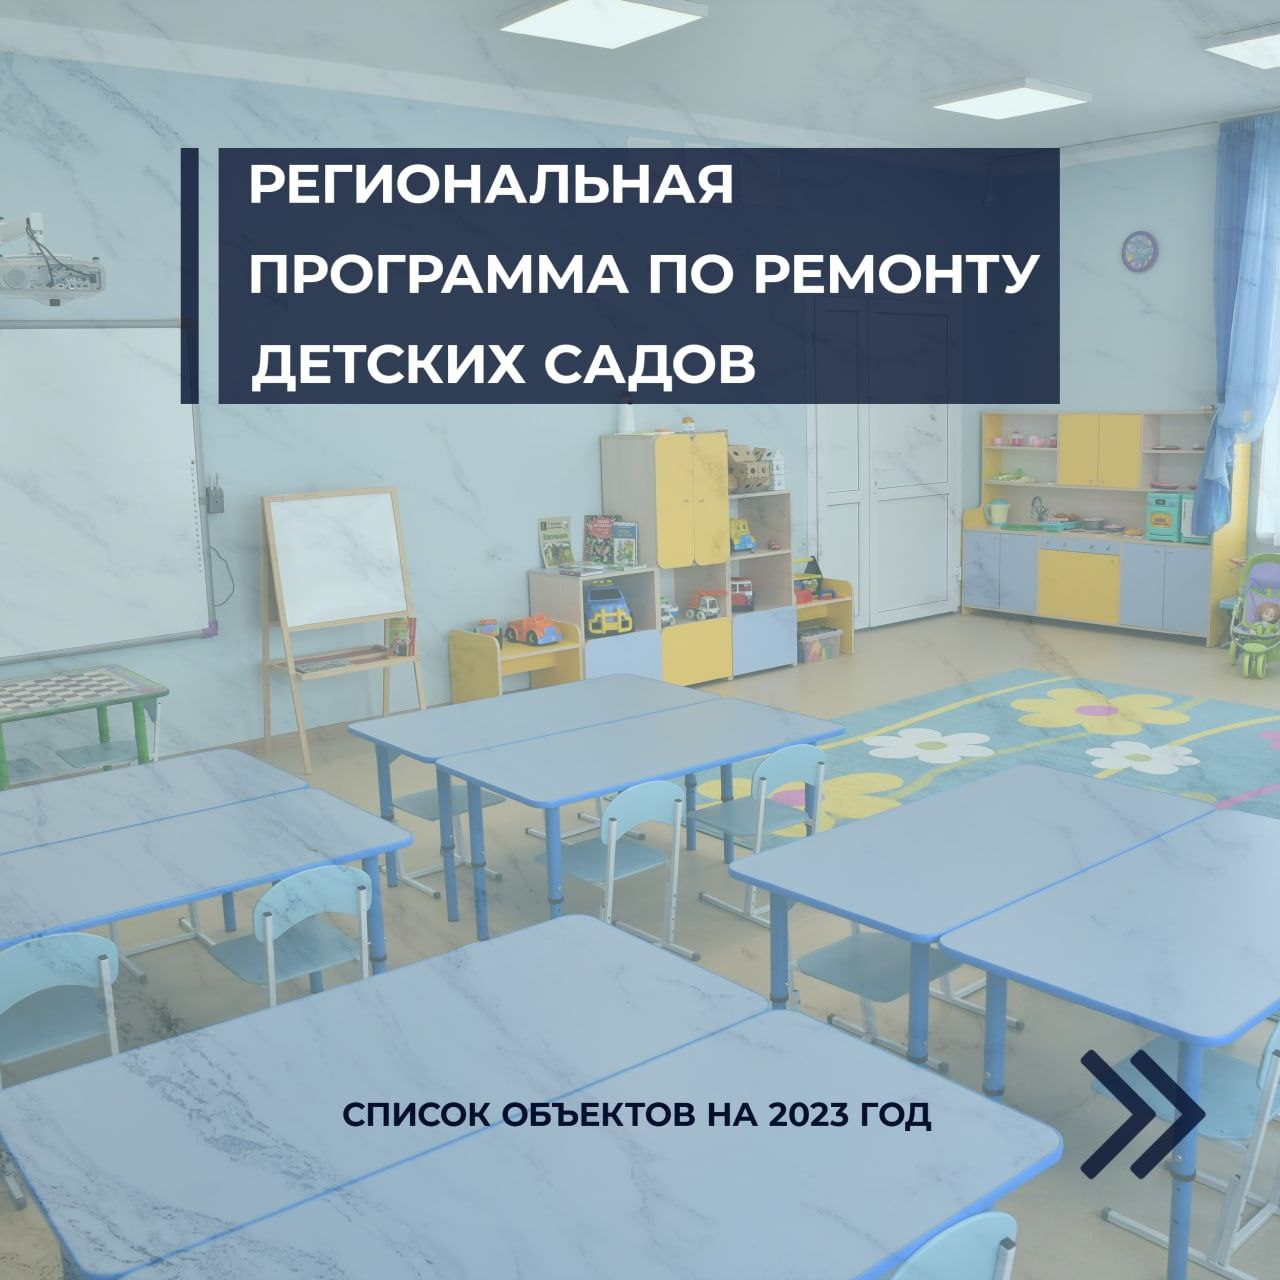 Сформирован список 100 детских садов, которые в 2023 году будут участвовать в региональной программе ремонта.